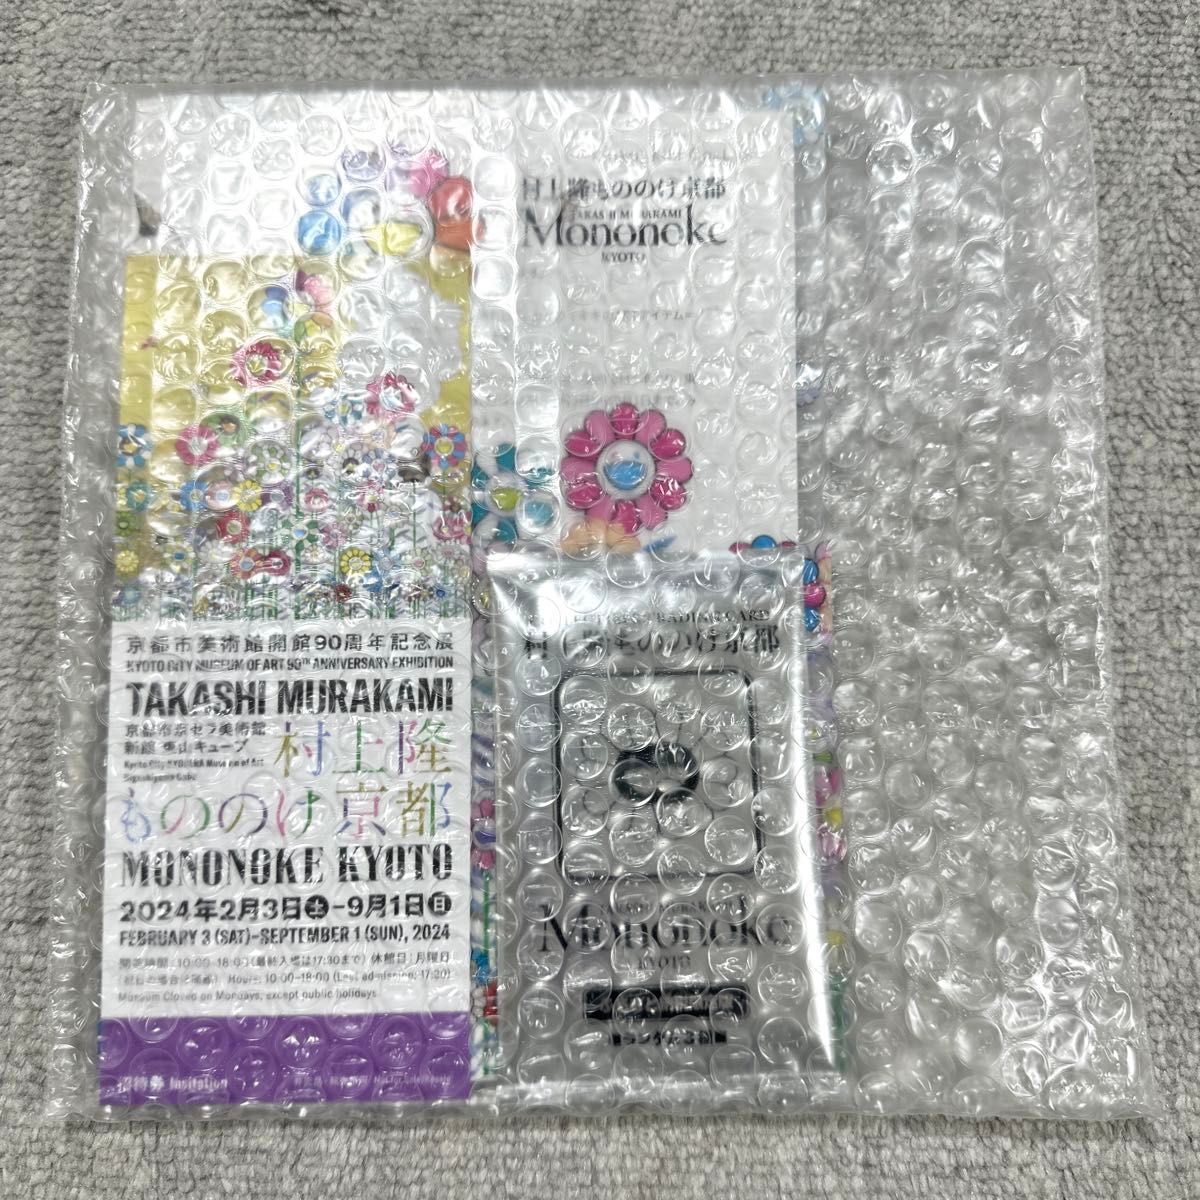 村上隆 もののけ京都 京都市美術館 チケット ファイル トレーディングカード murakamitakashi kaikaikiki